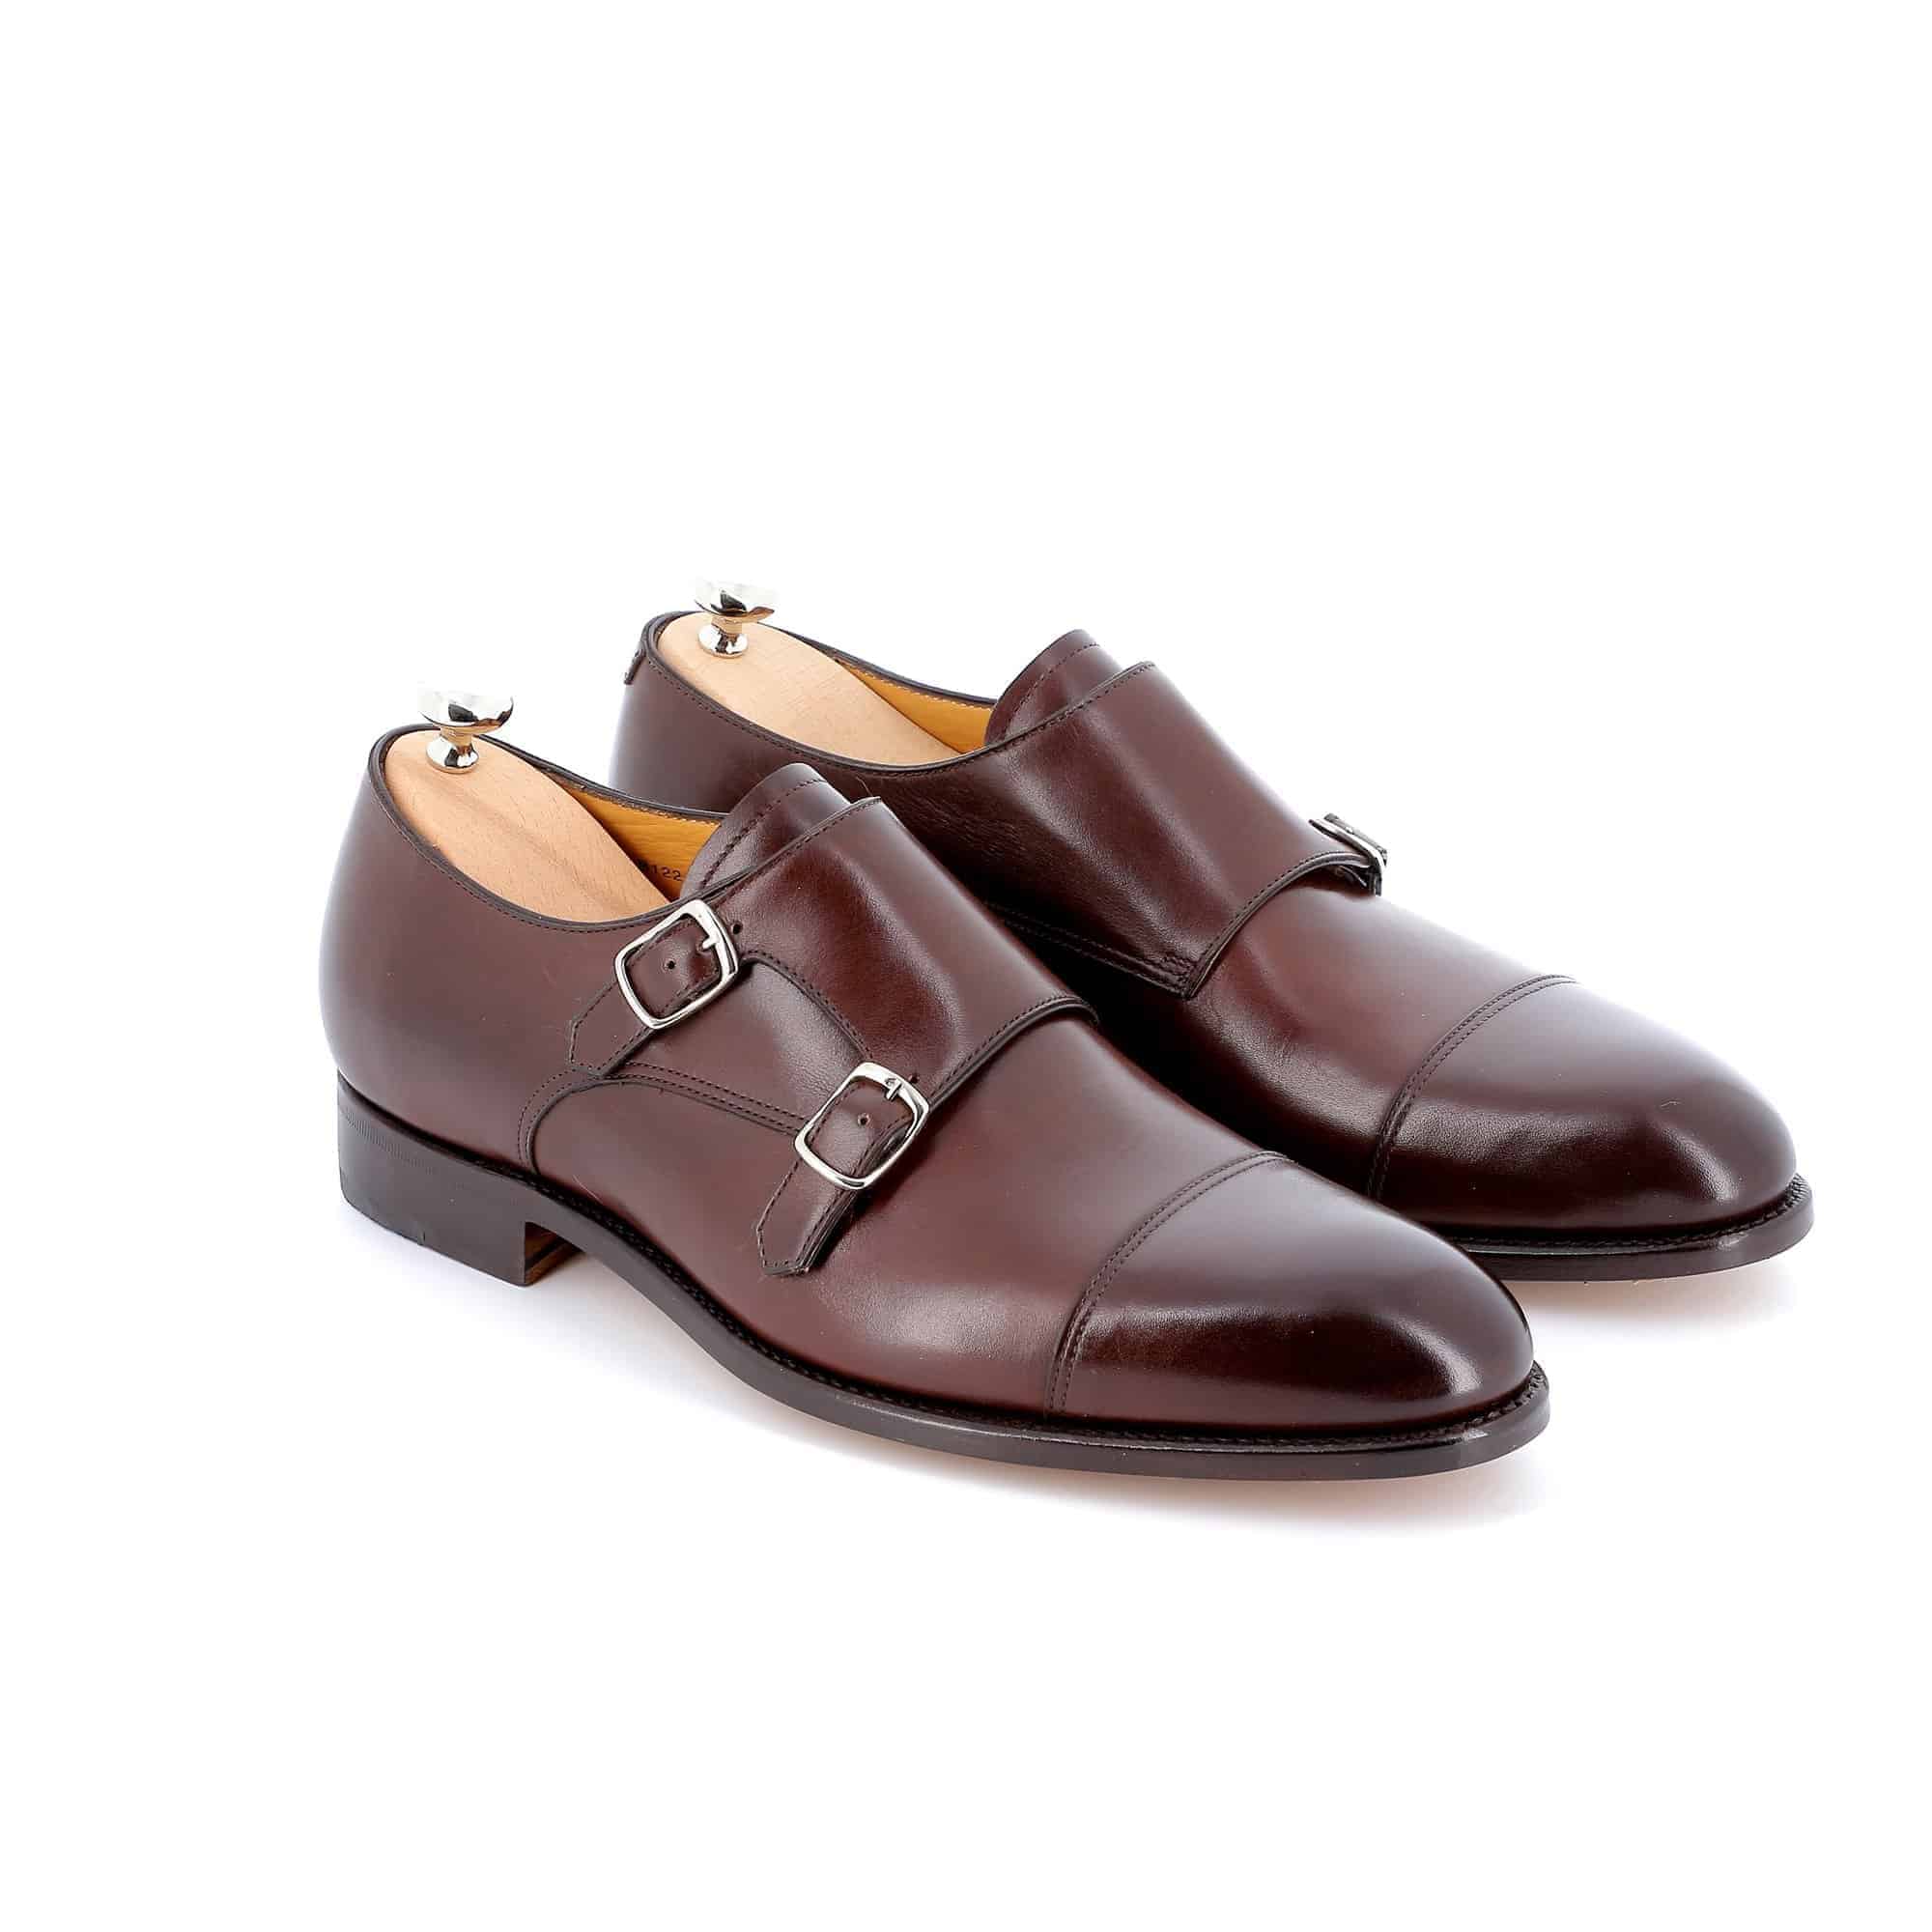 Chaussures doubles boucles Edgar cuir marron semelles cuir